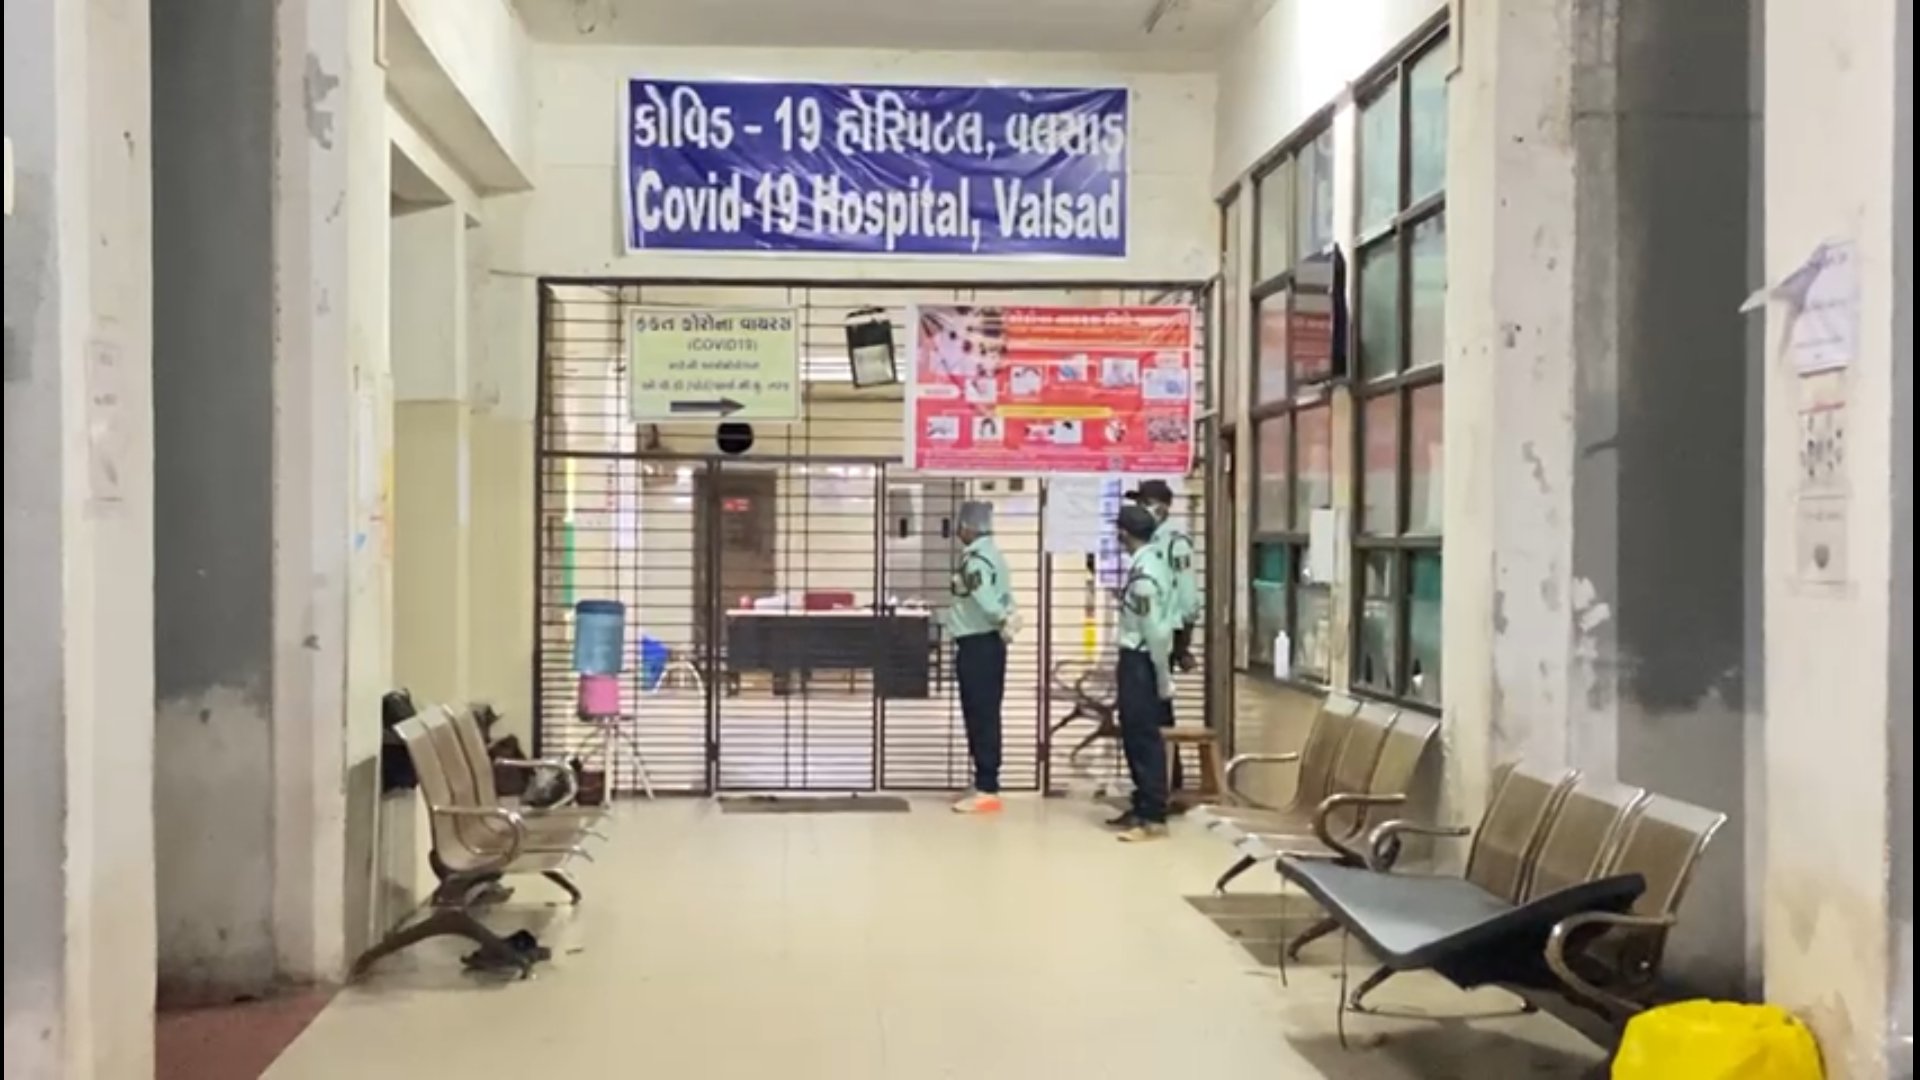 વલસાડની સિવિલ હોસ્પિટલના કોવિડ 19 સેન્ટરમાં 2 દર્દીના મોત થતા